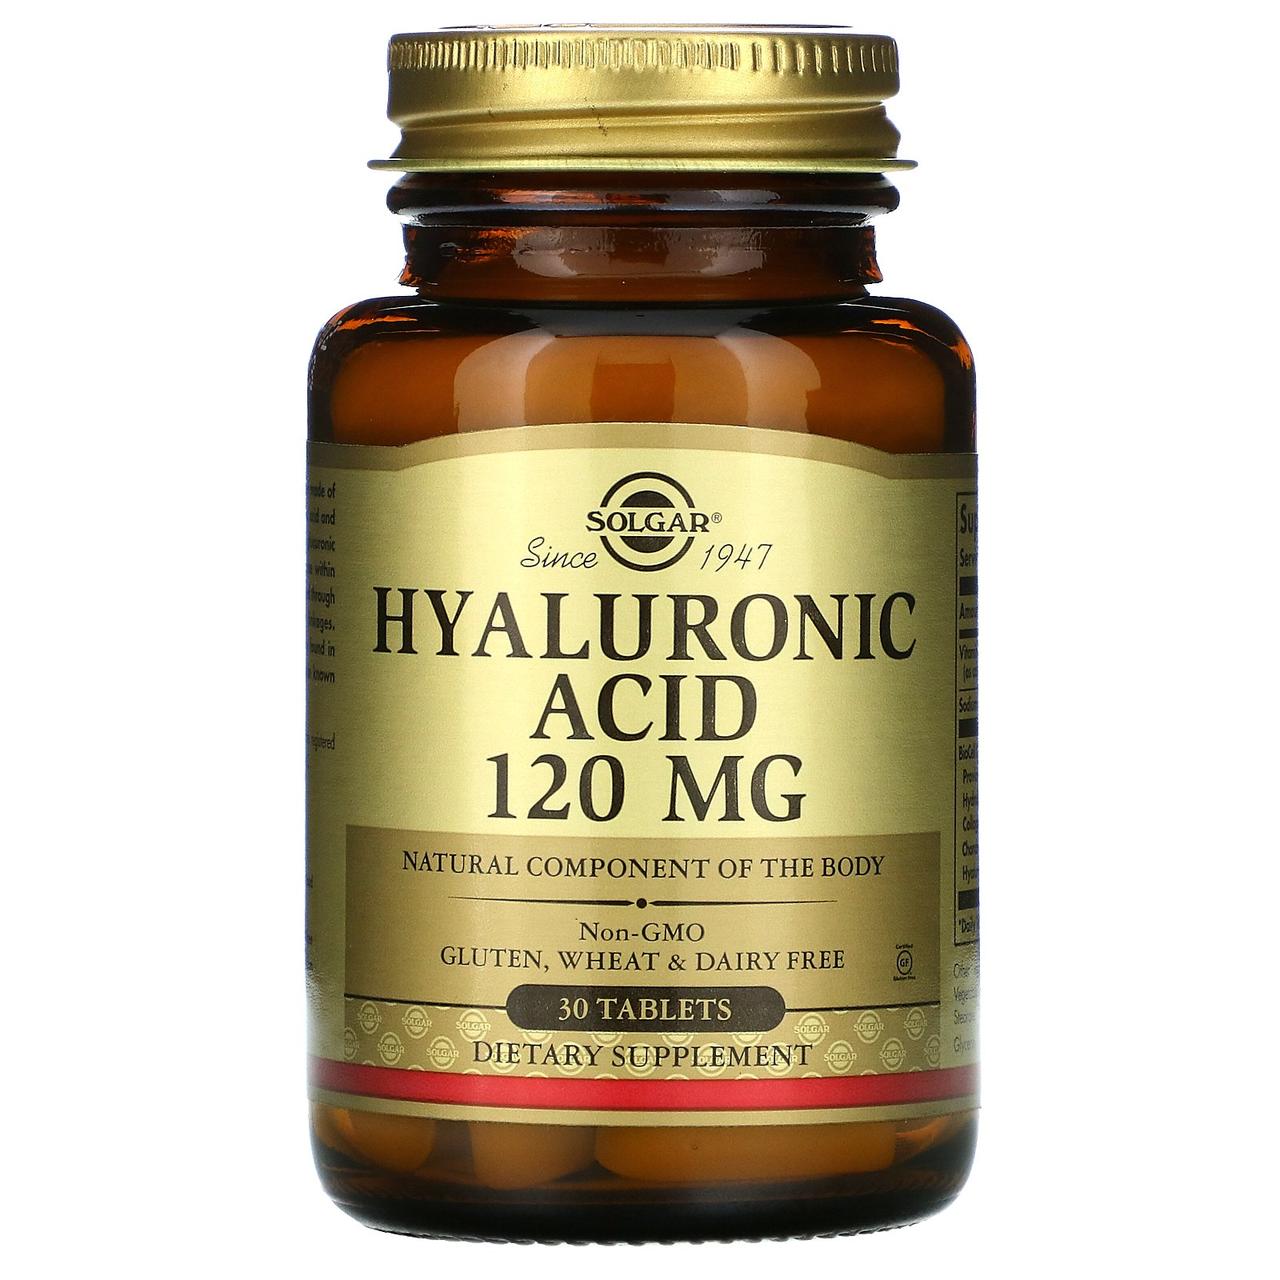 Гіалуронова кислота Hyaluronic Acid Solgar 120 мг 30 таблеток біодобавка для покращення волосся, шкіри та нігтів